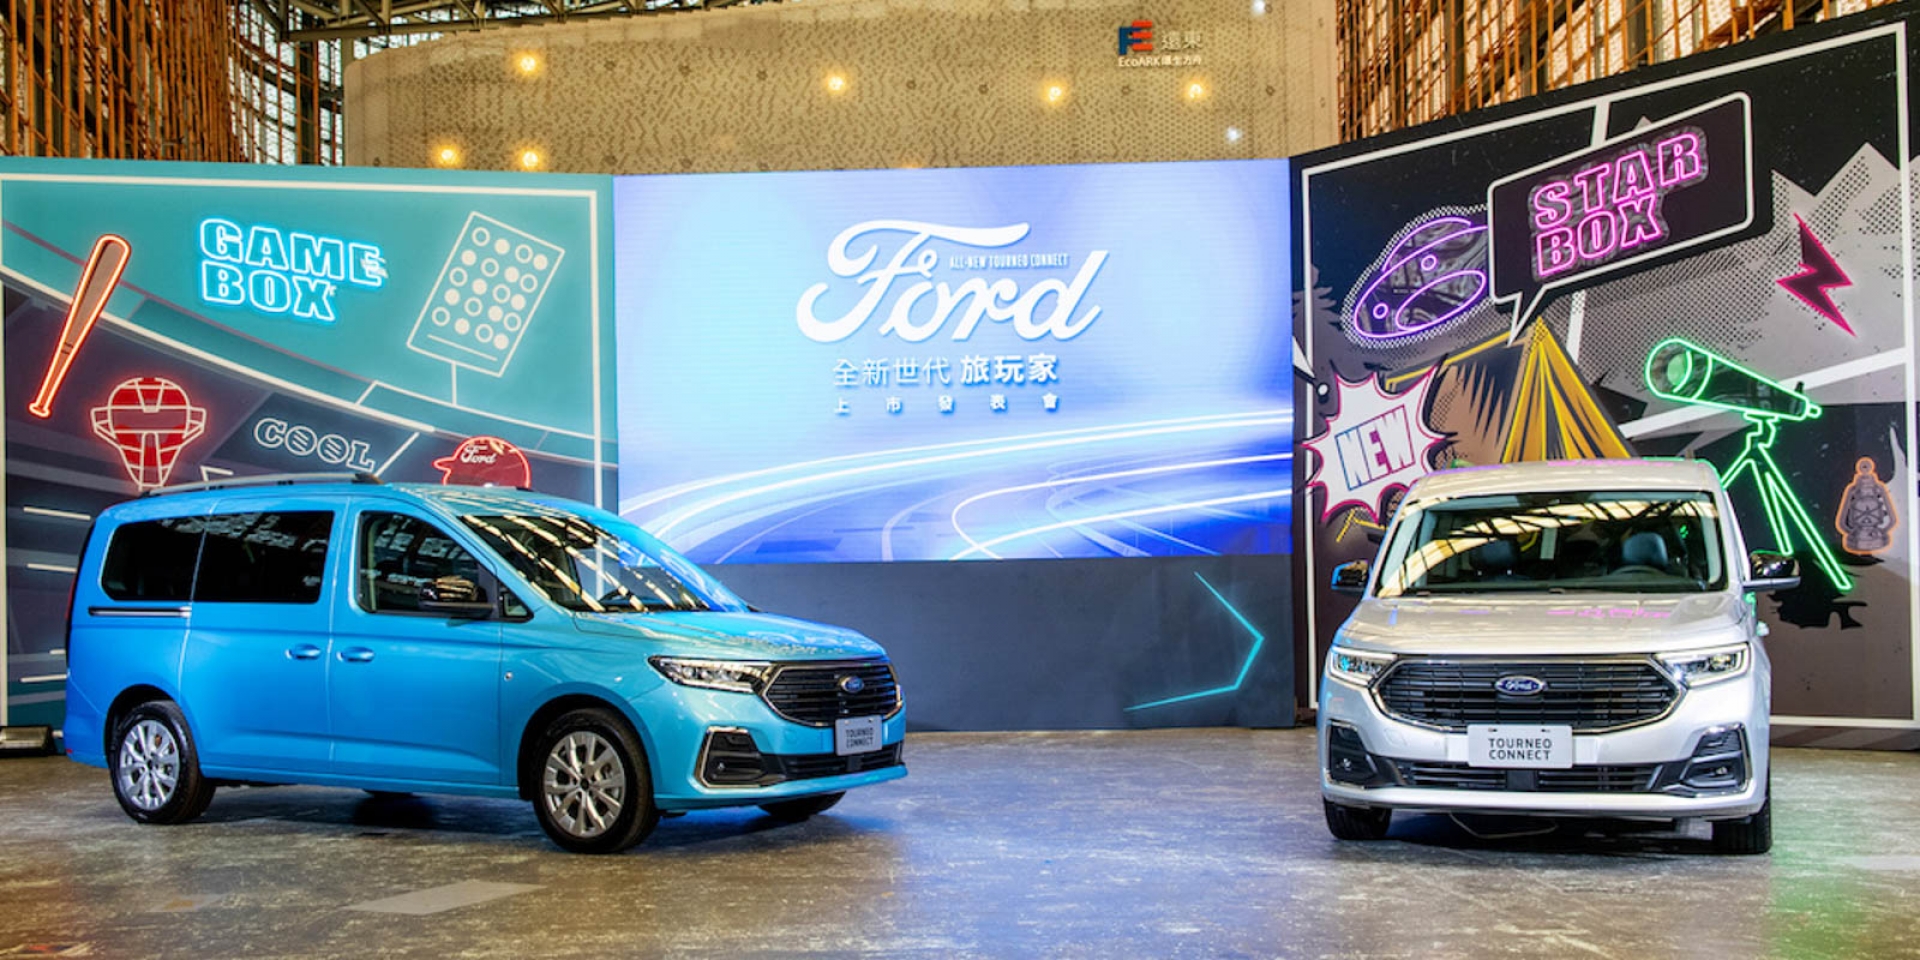 新世代The All-New Ford Tourneo Connect旅玩家 109.8萬起正式上市 百變小酷巴全新風貌演繹多元生活新態度 商務、自用兩相宜